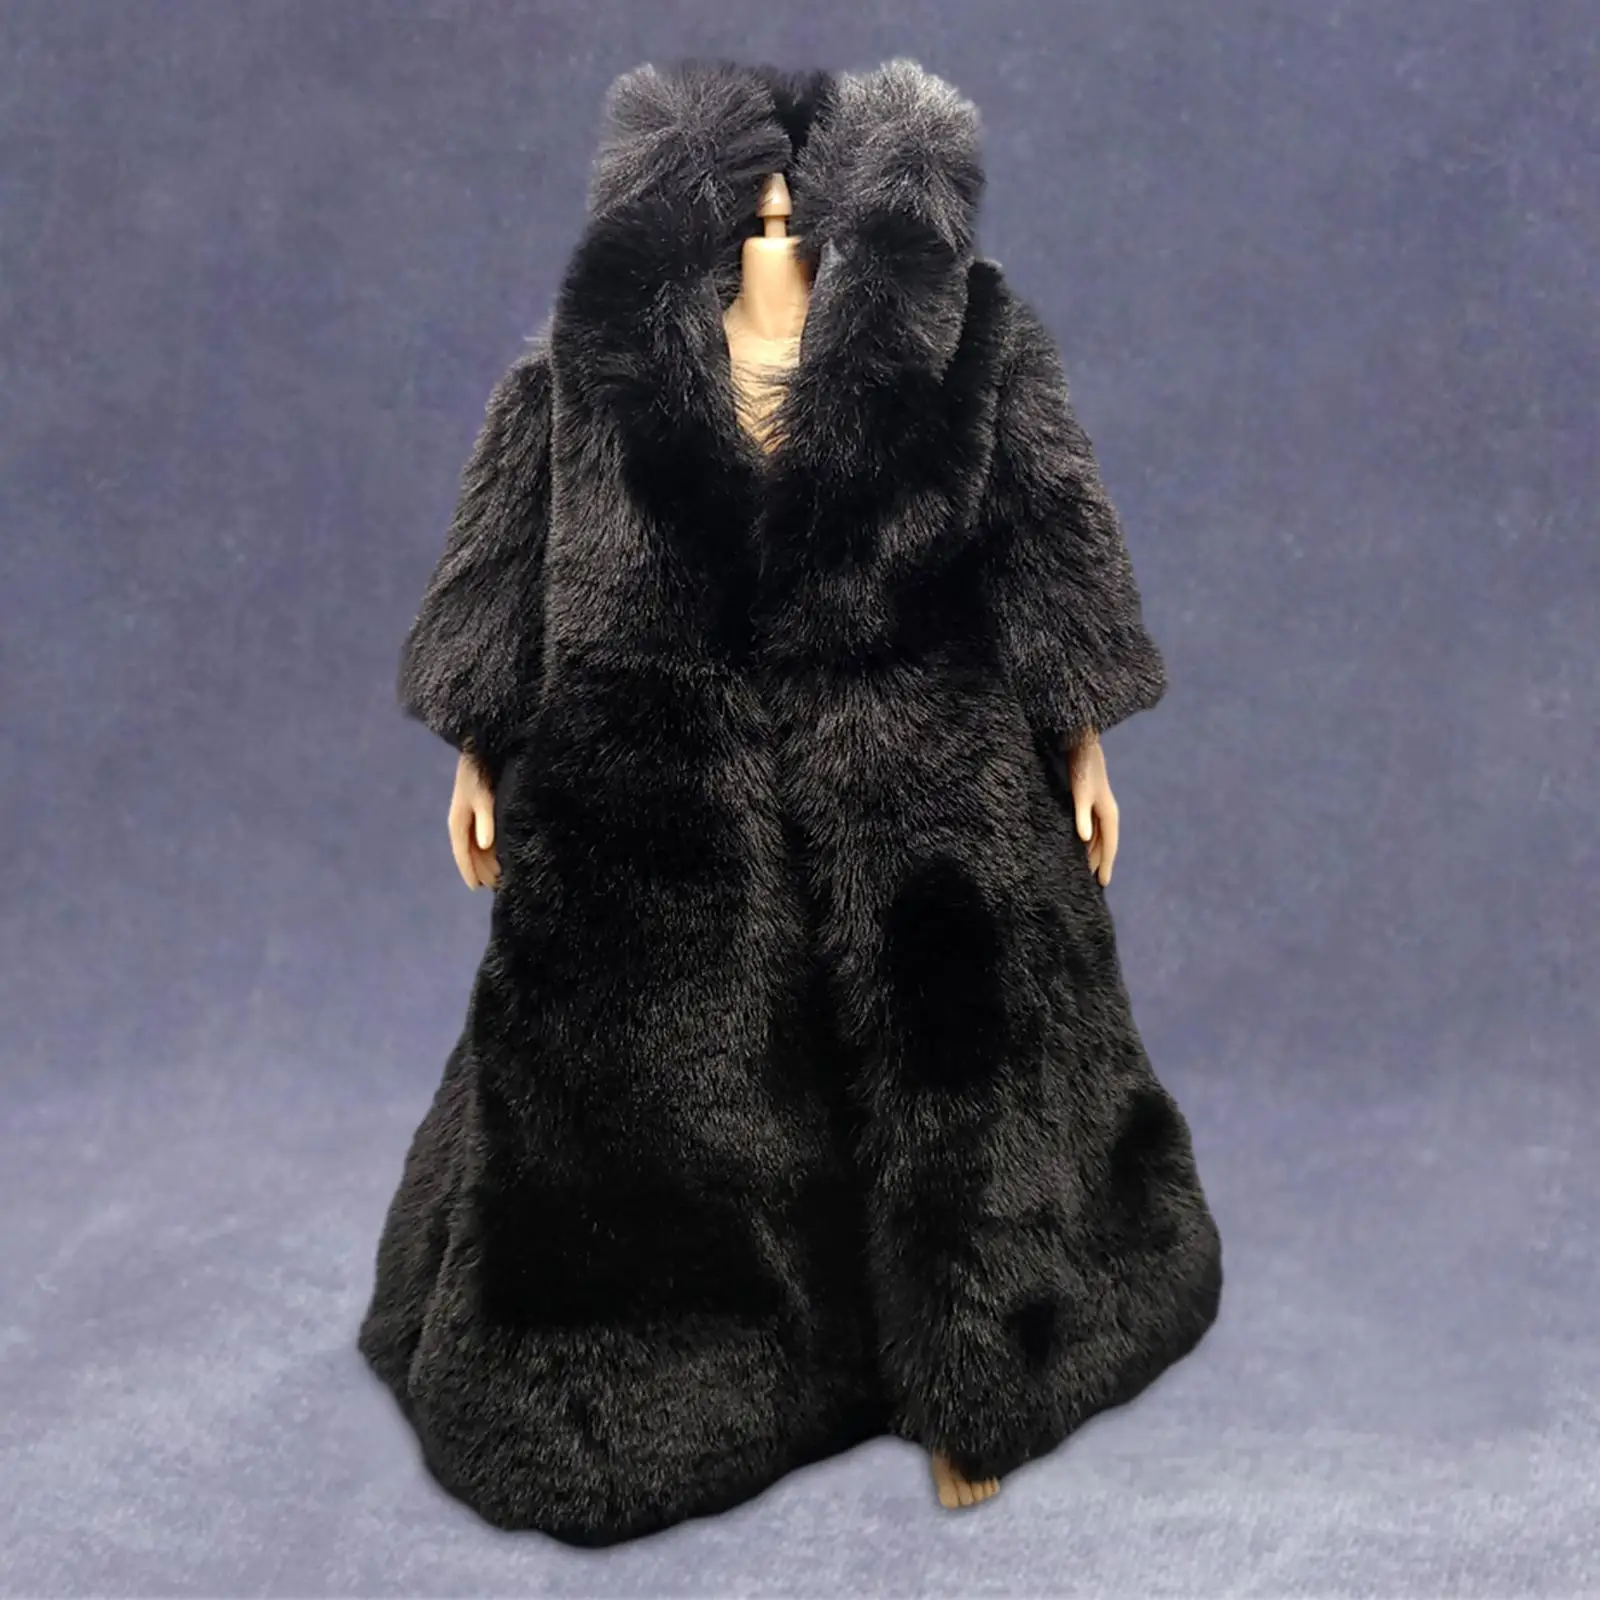 

Женская одежда в масштабе 1/6, пальто, зимнее пальто, верхняя одежда для женской фигуры 12 дюймов